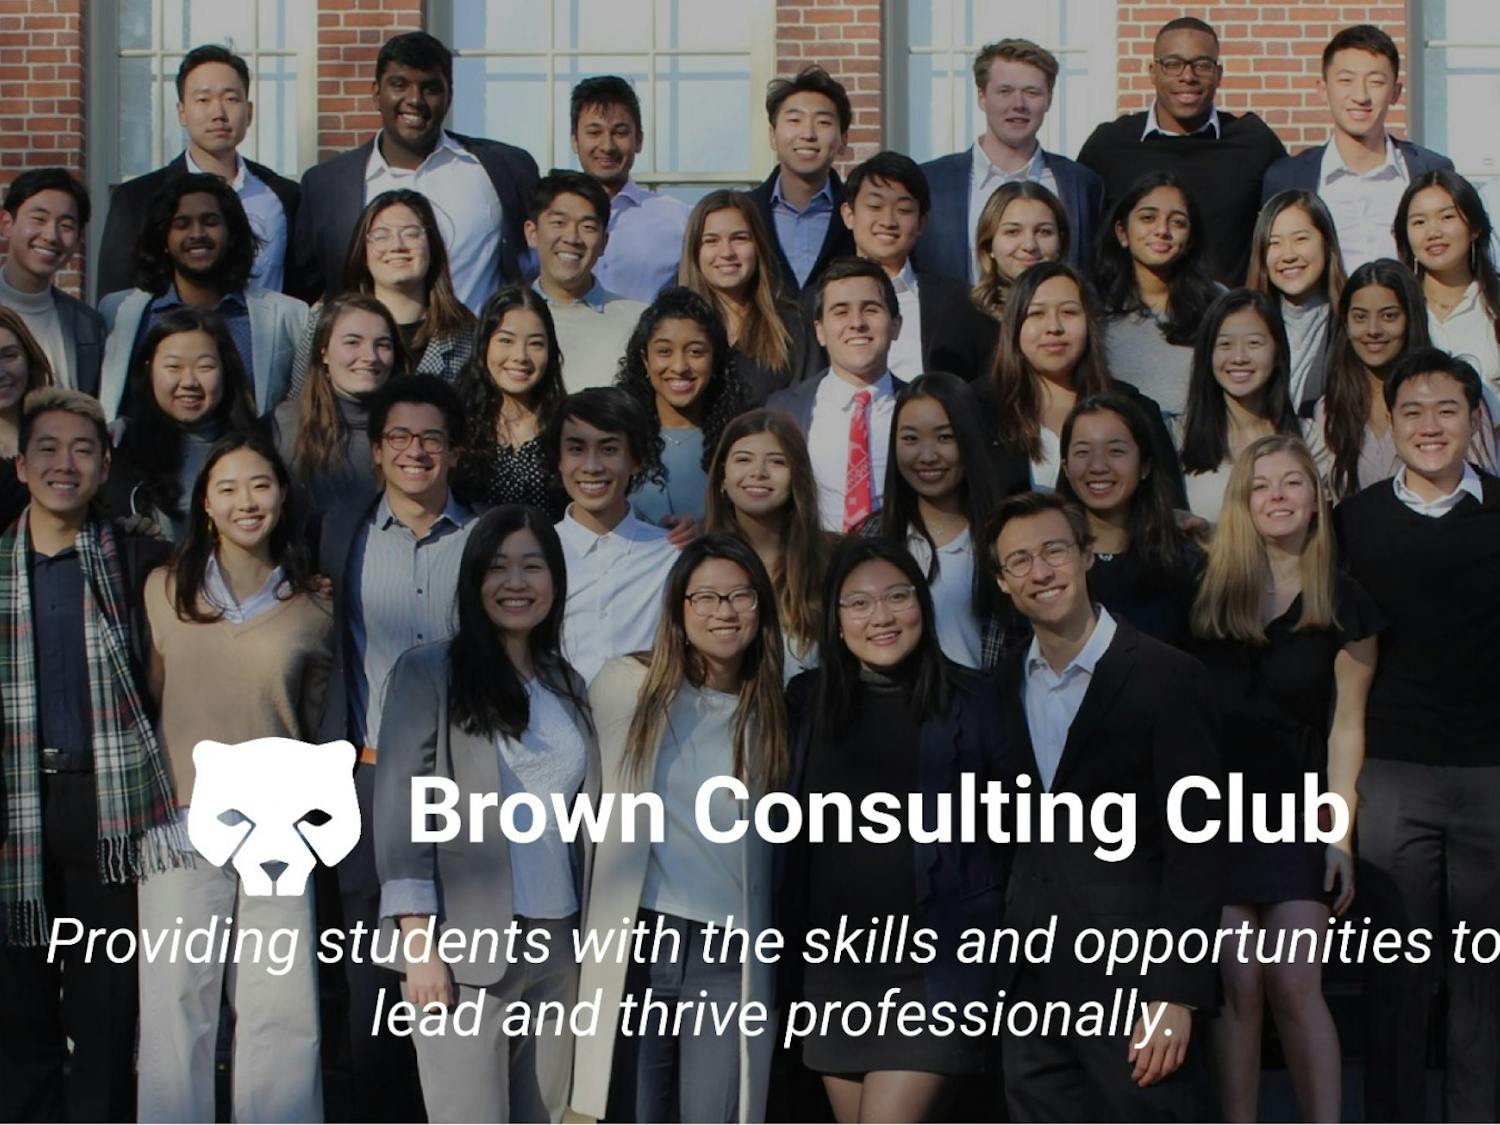 Brown Consulting Club, CO Brown Consulting Club Website-2.jpg